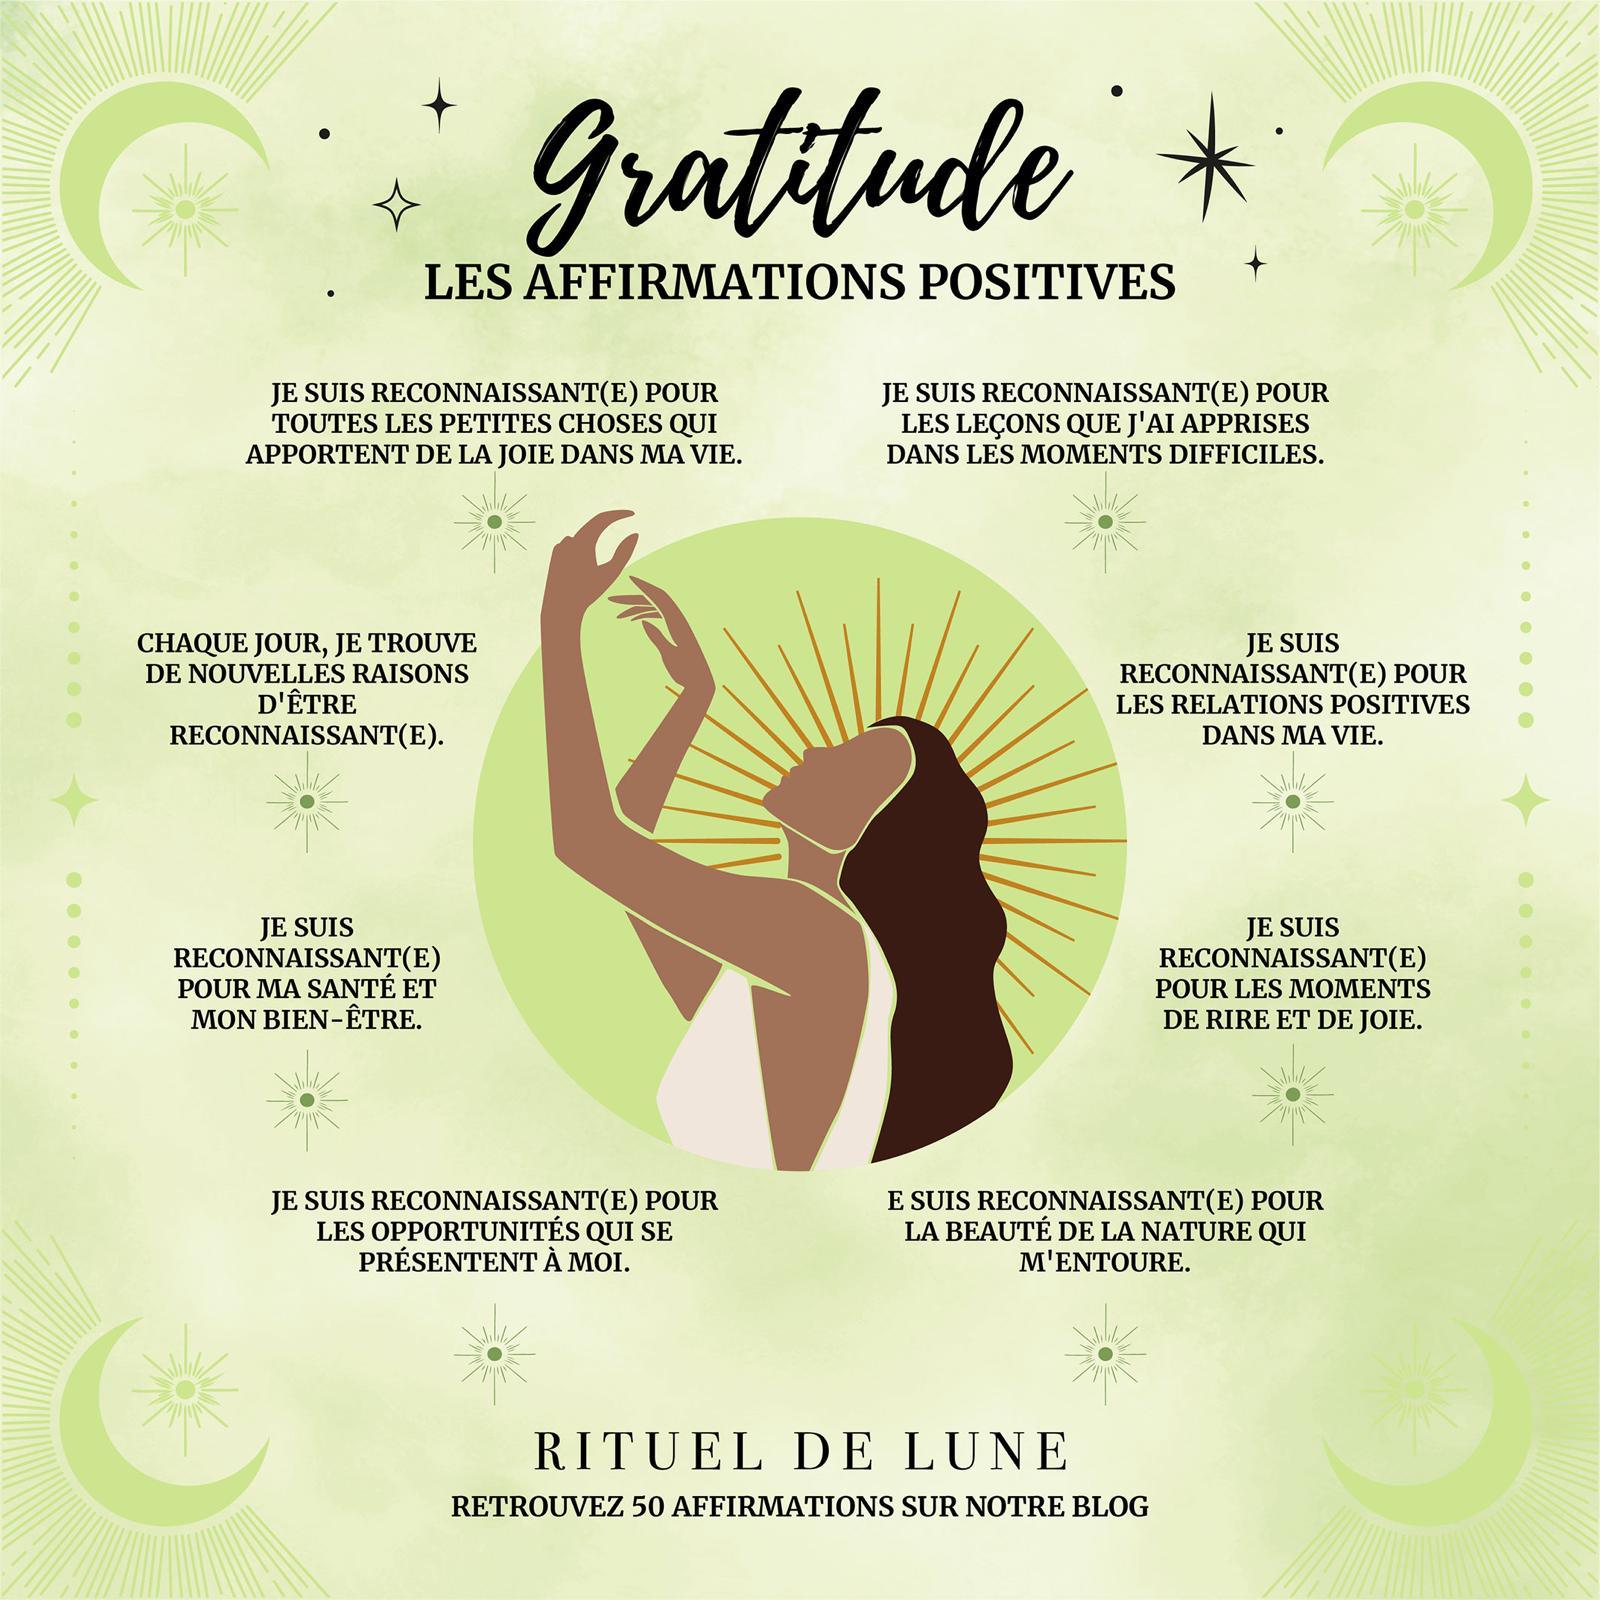 50 affirmations positives pour la gratitude | Rituel de Lune